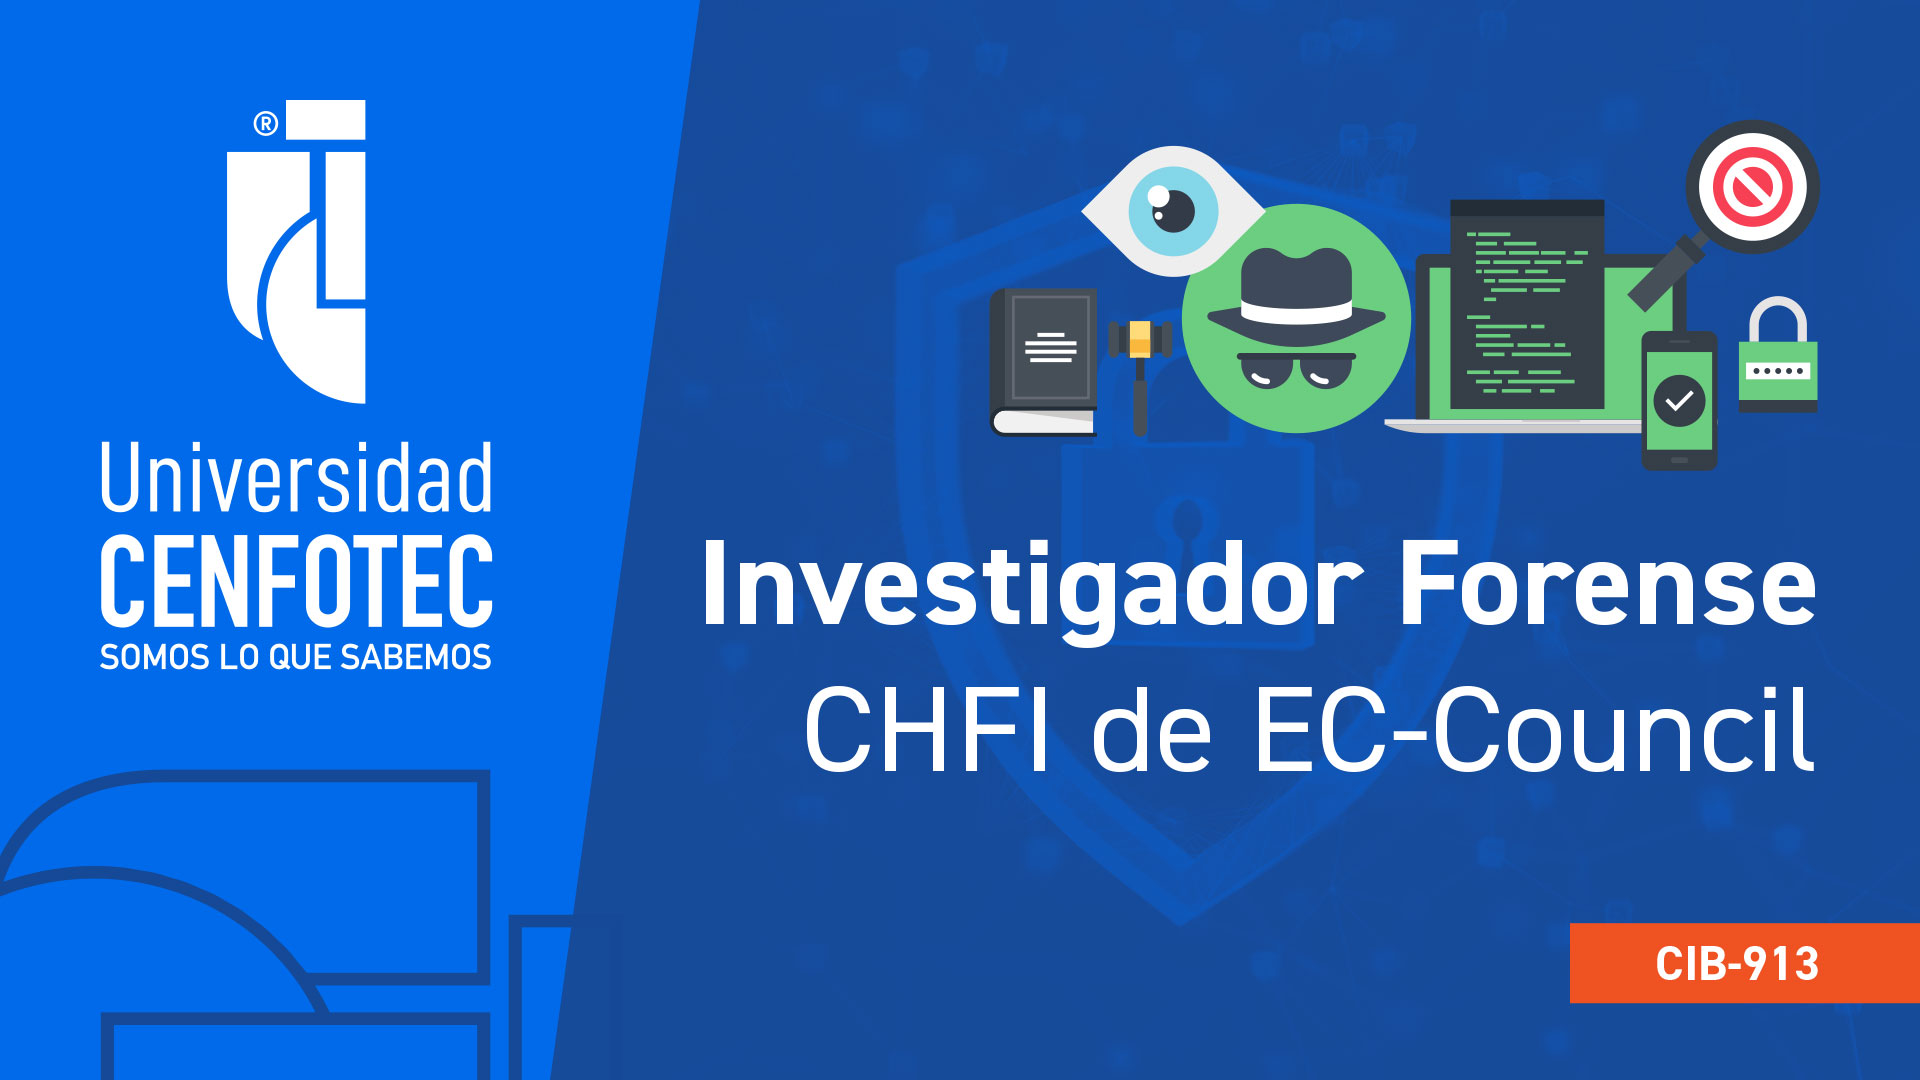 Investigador forense informático (CHFI de EC-Council)